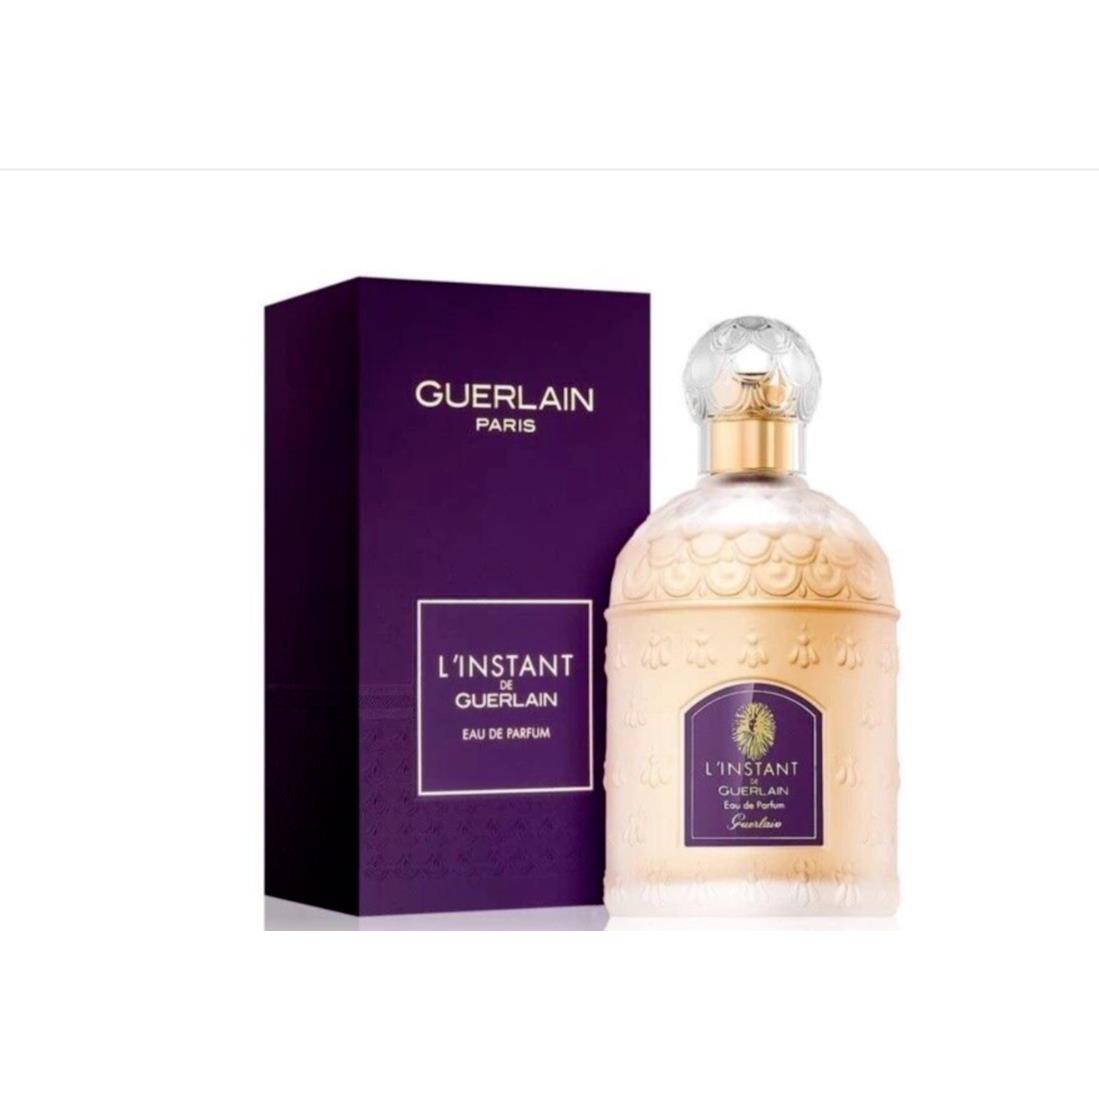 L Instant De Guerlain Eau De Parfum Edp 3.3 oz 100 ml Rare